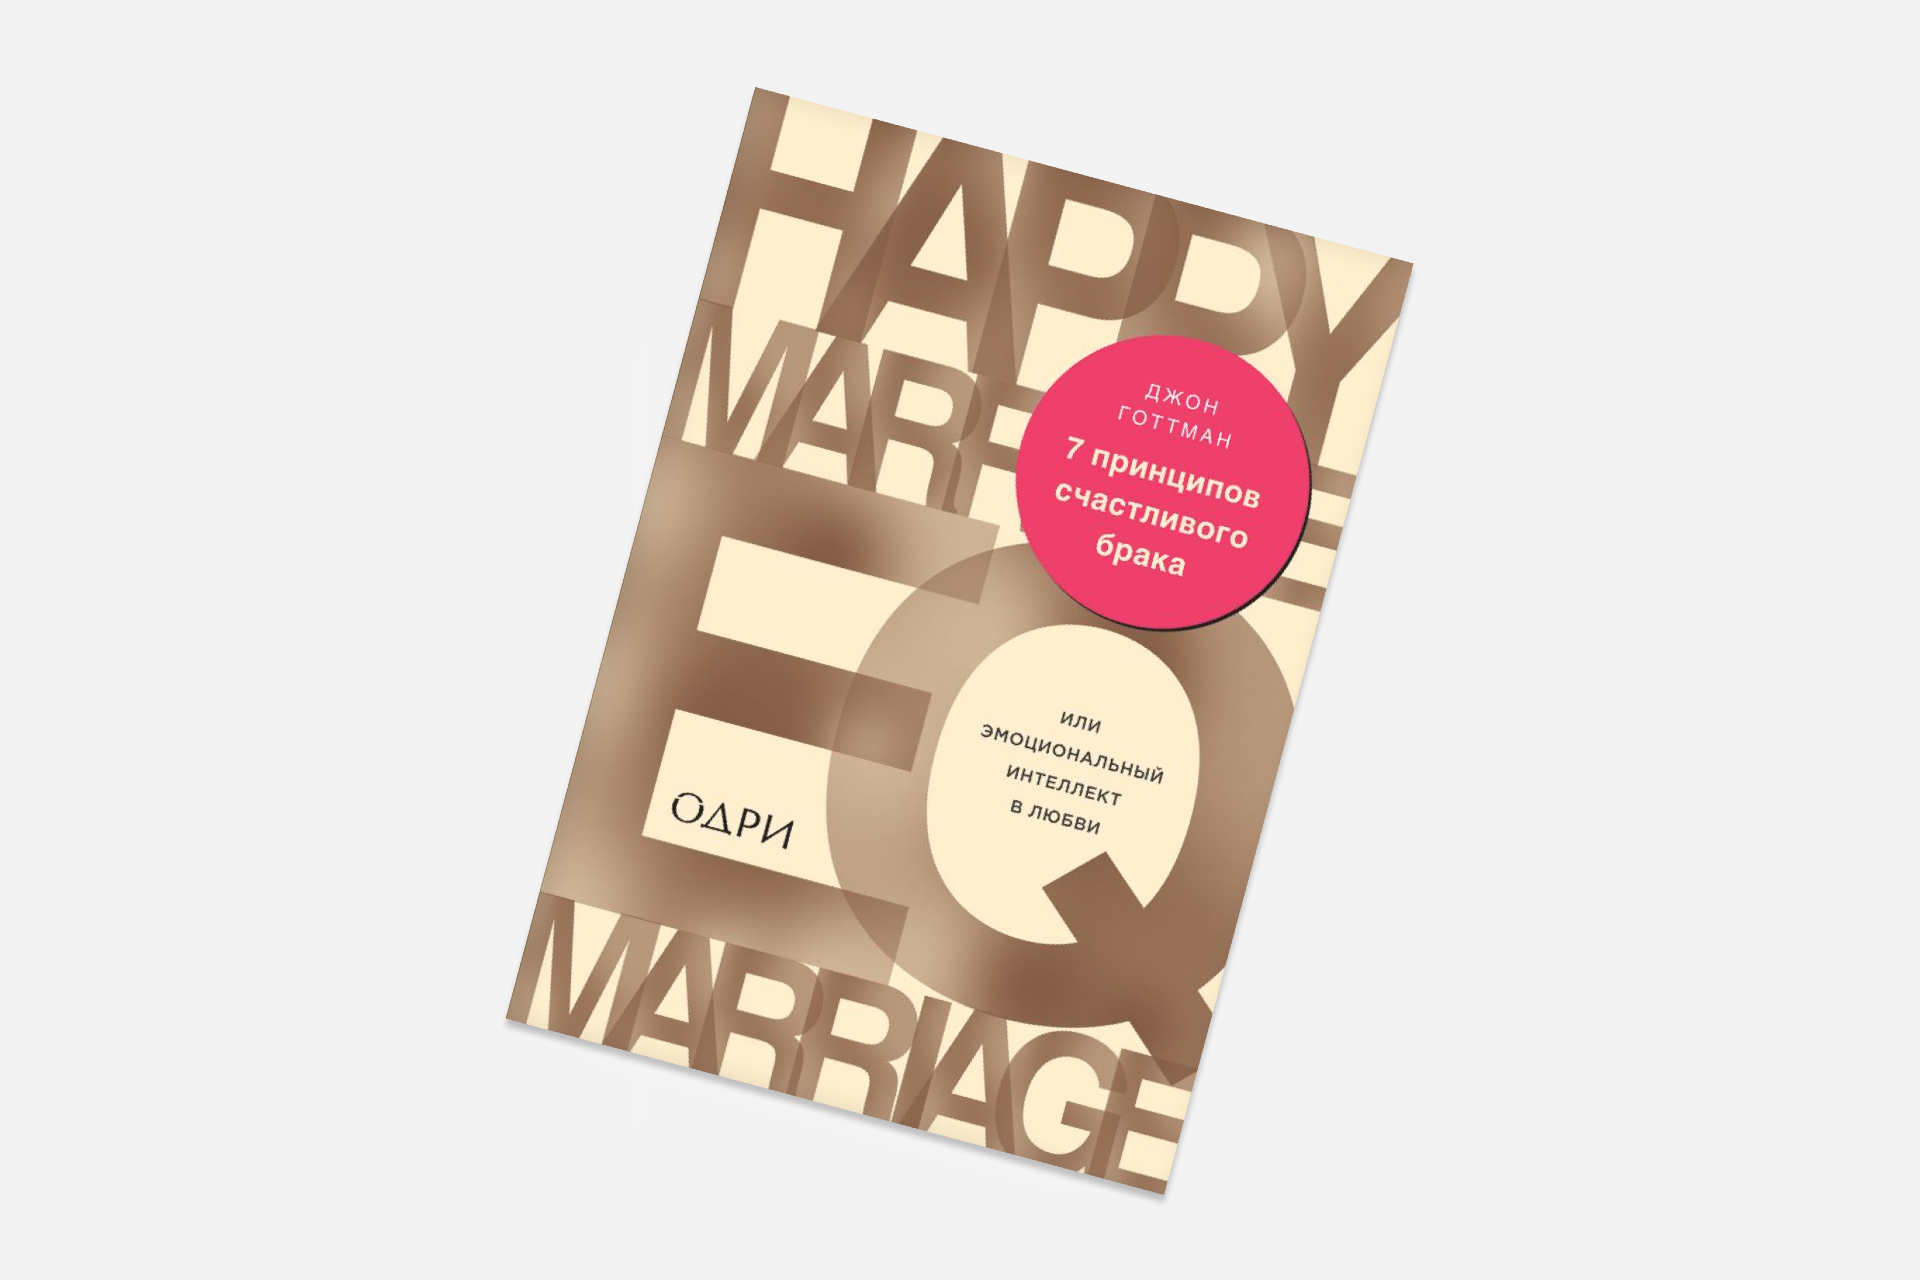 «7 принципов счастливого брака». Джон Готтман